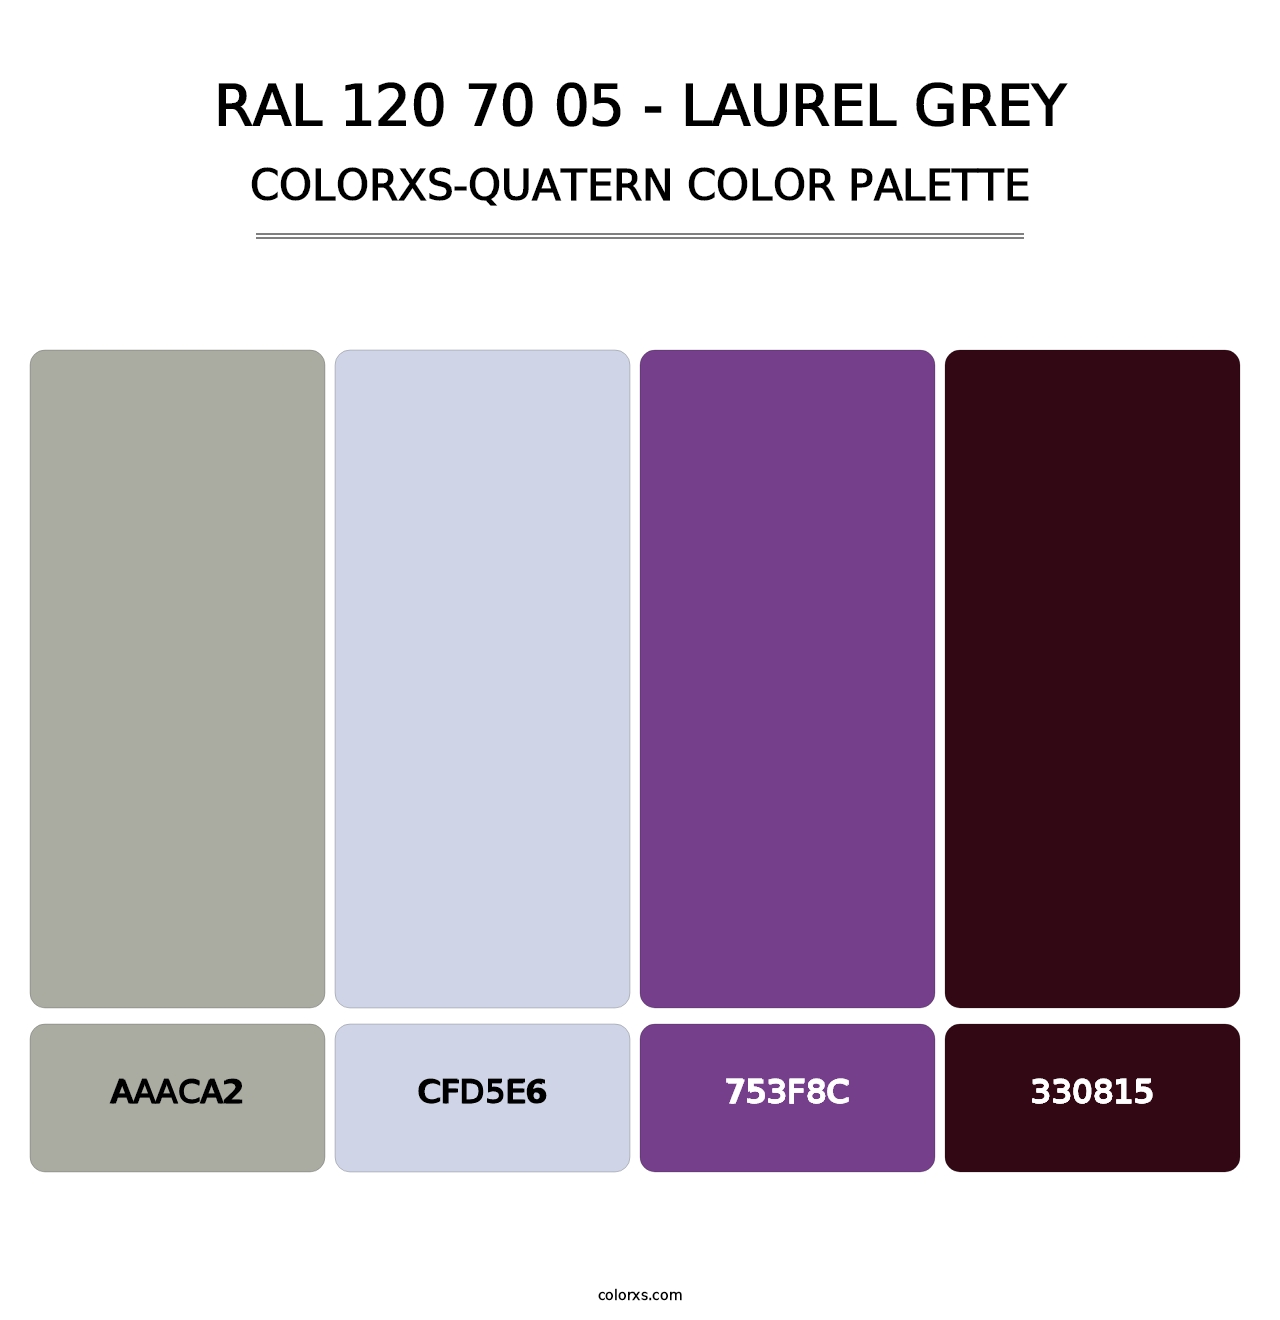 RAL 120 70 05 - Laurel Grey - Colorxs Quatern Palette